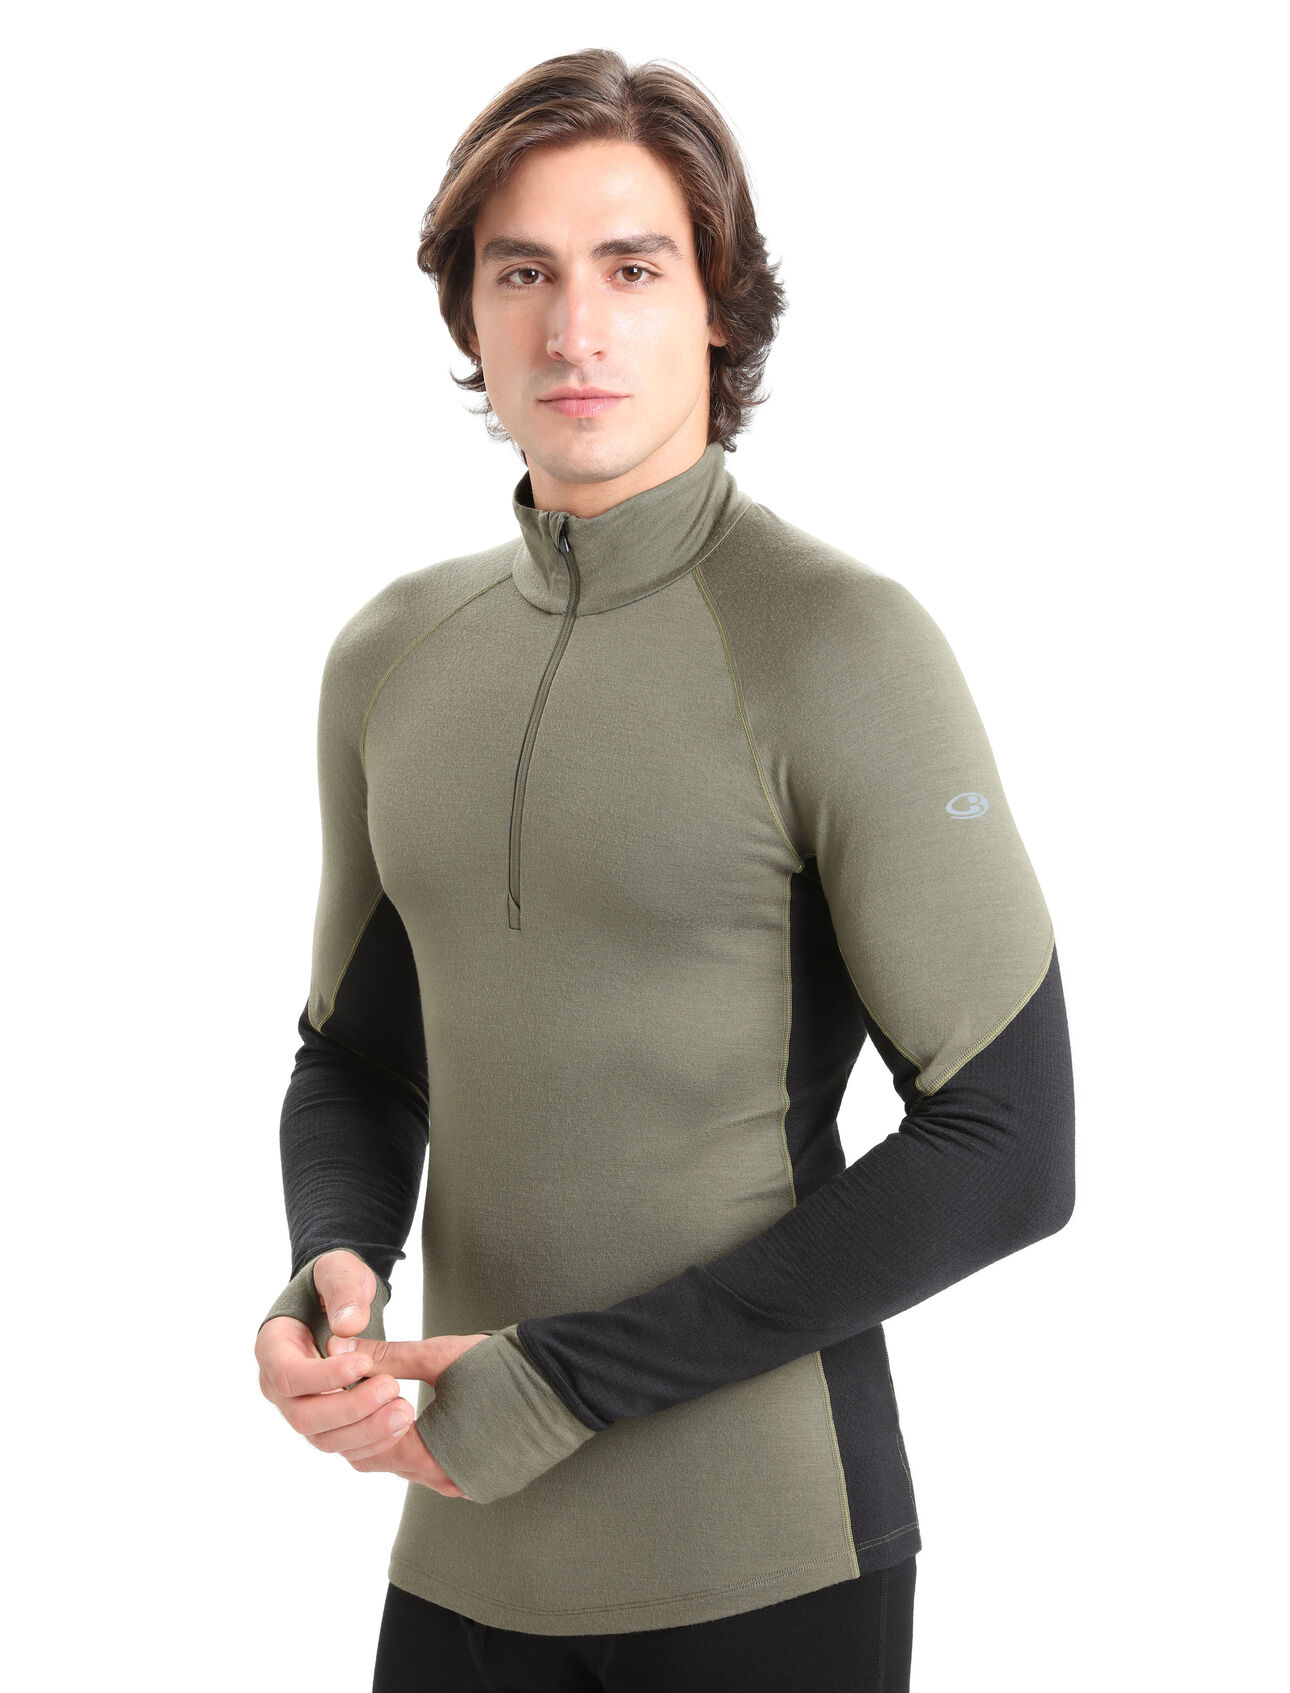 Koszulka termiczna BodyFitZone™ z wełny merino 260 z długim rękawem i zamkiem błyskawicznym do połowy długości